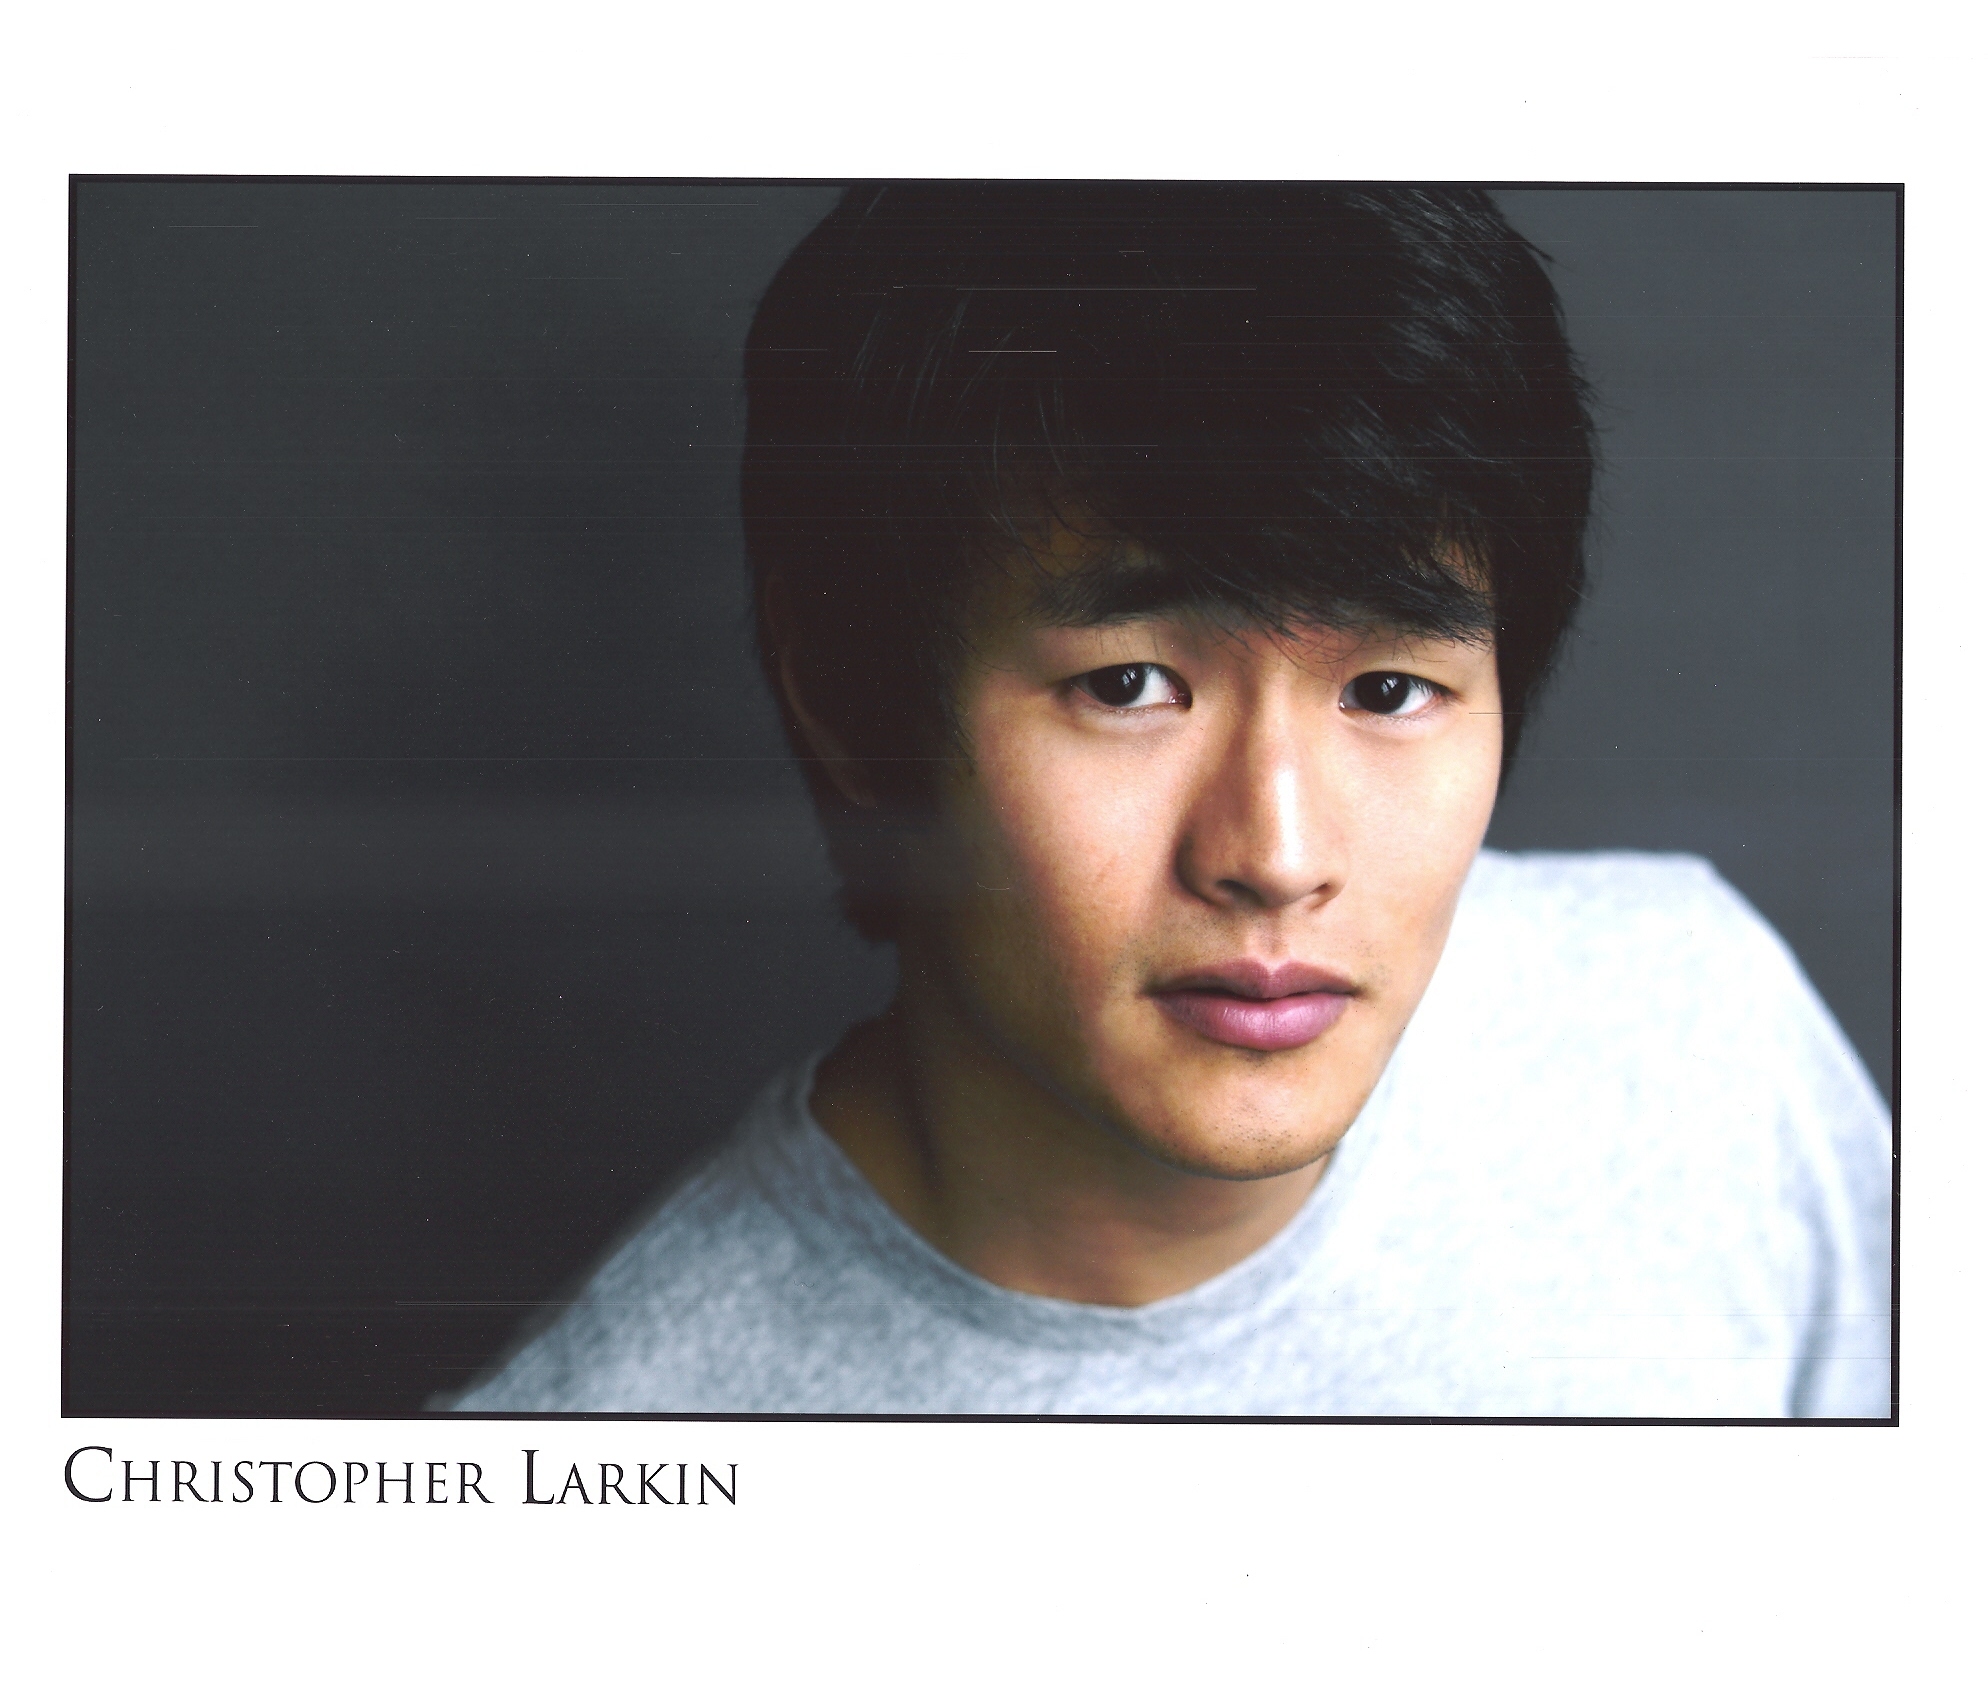 christopher-larkin-actor-images